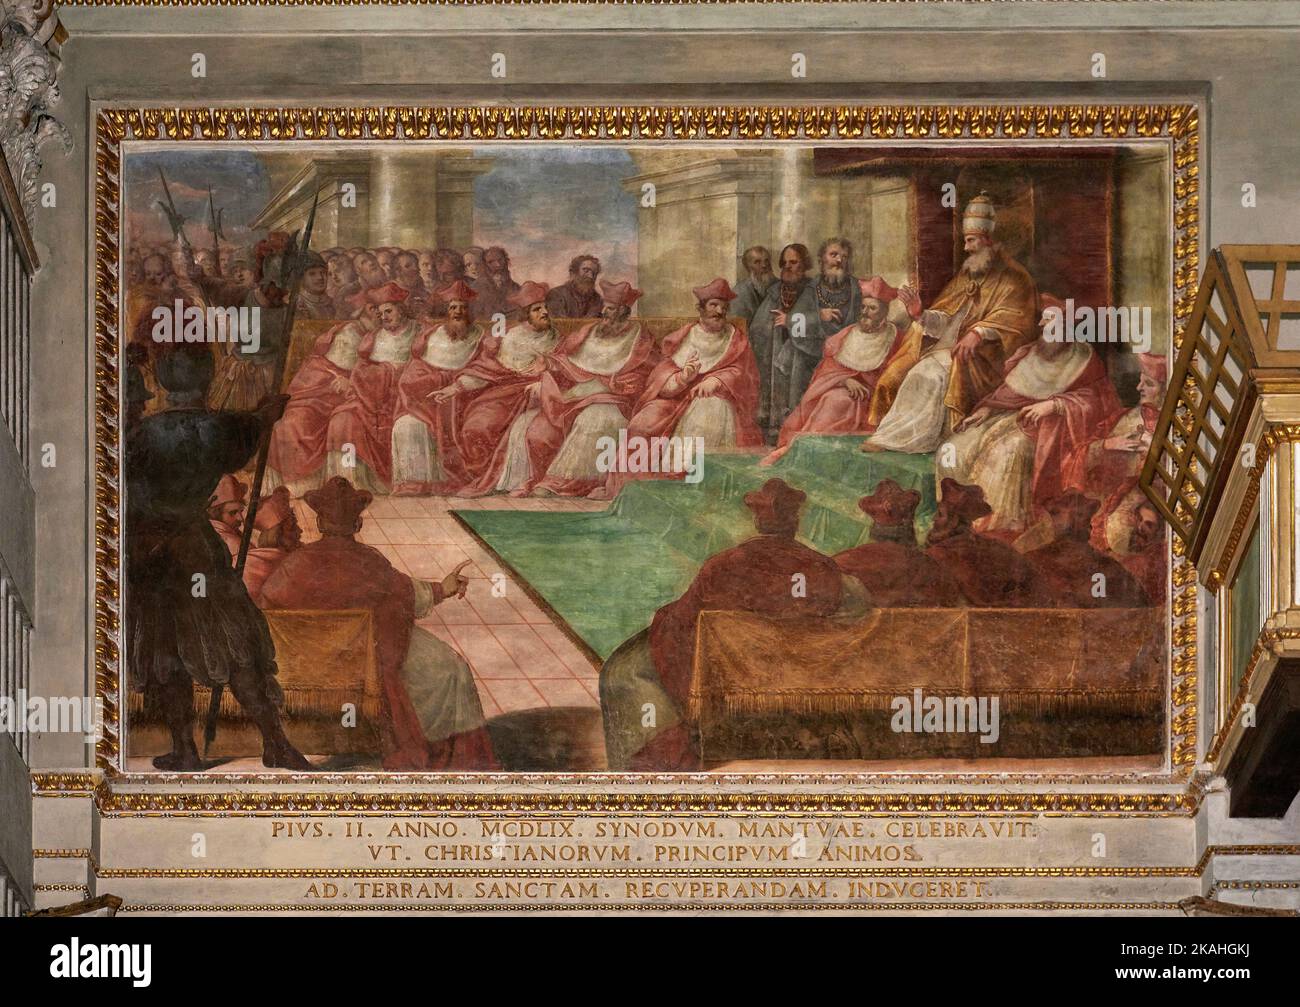 il Concilio di Mantova nel 1067 - affrisco - ignoto pittore lombardo -1459 - Mantova, Italia, chiesa di S. Pietro Foto de stock